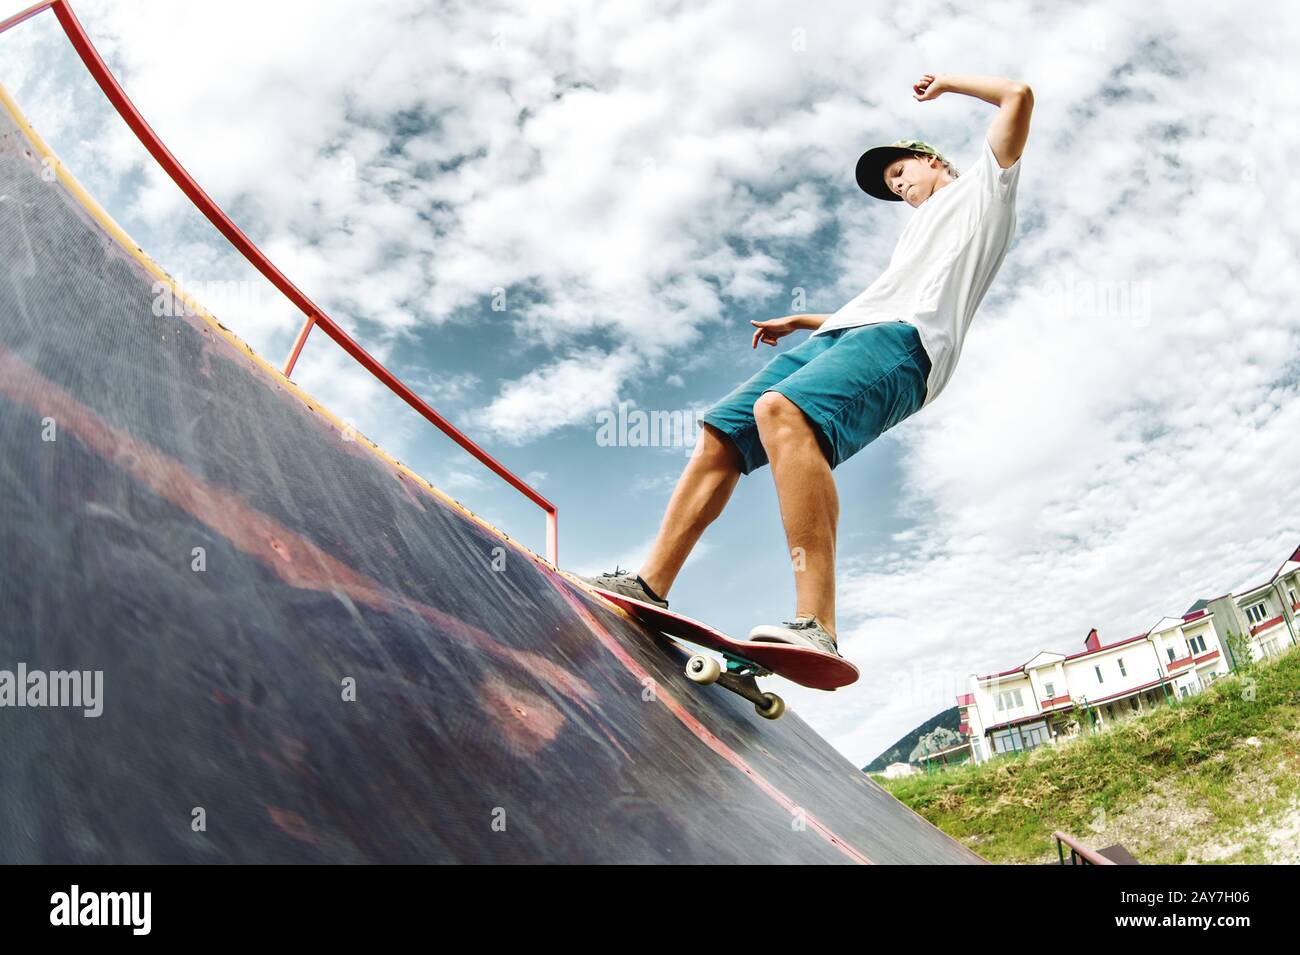 Un patinador adolescente cuelga sobre una rampa en una tabla de skate en un parque de skate Foto de stock